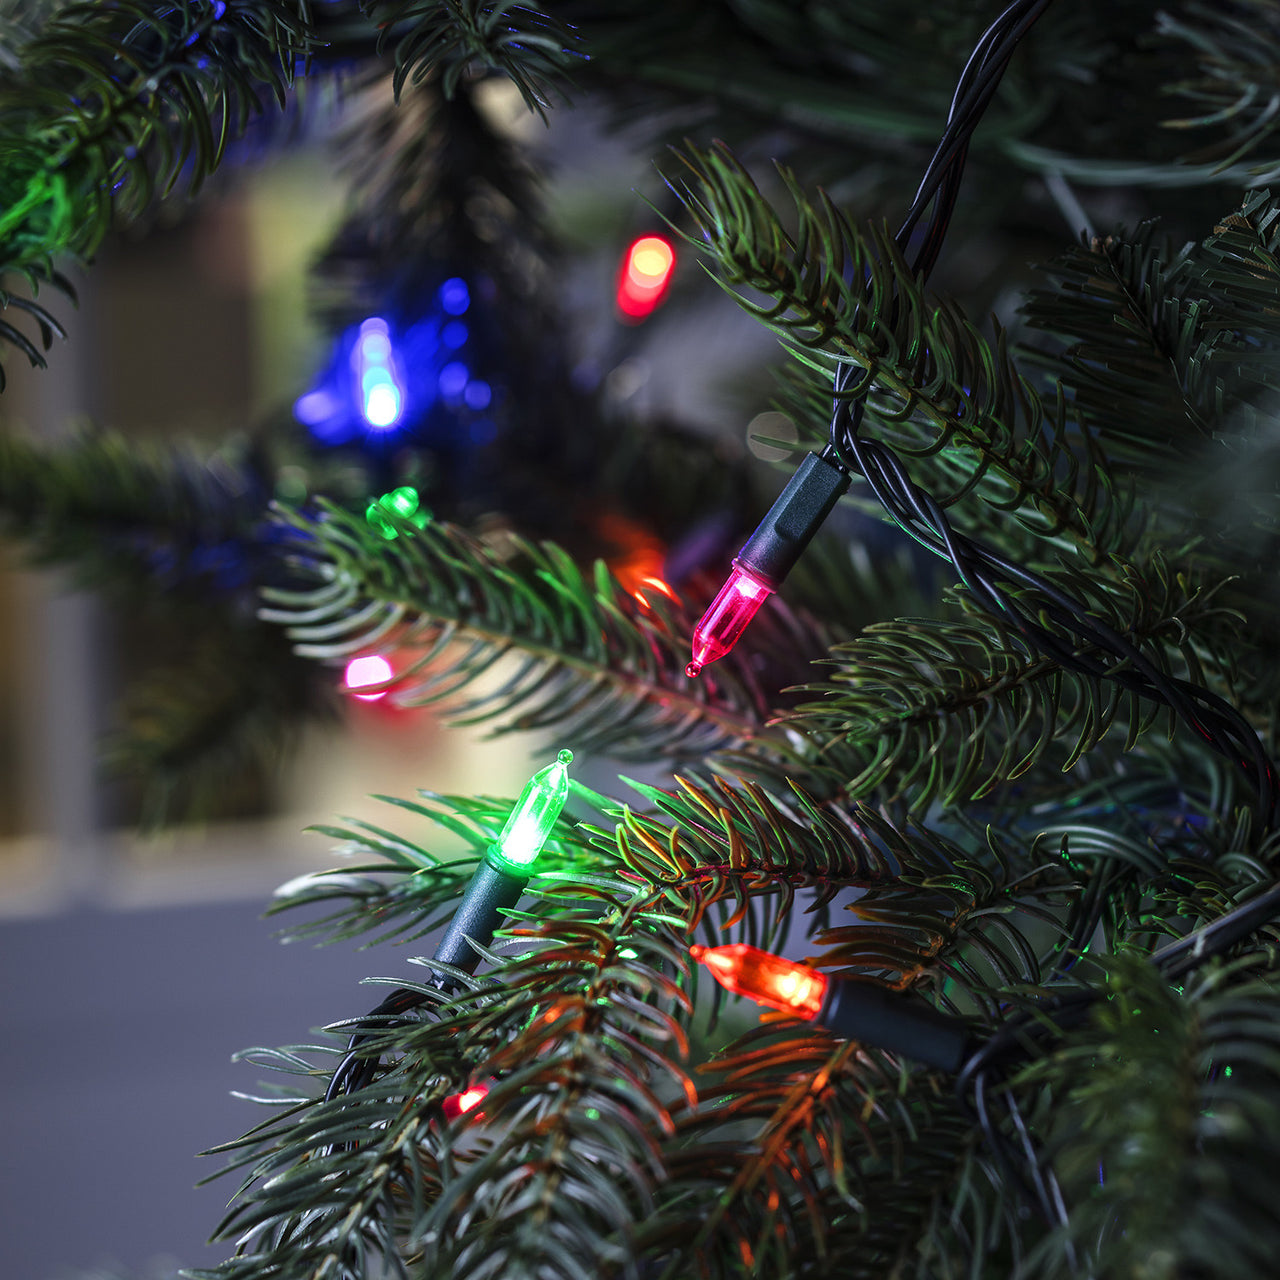 LightVision Leucht- Weihnachtsbaum 150cm  Lichtdekoration, Leuchten,  Weihnachtsbaum